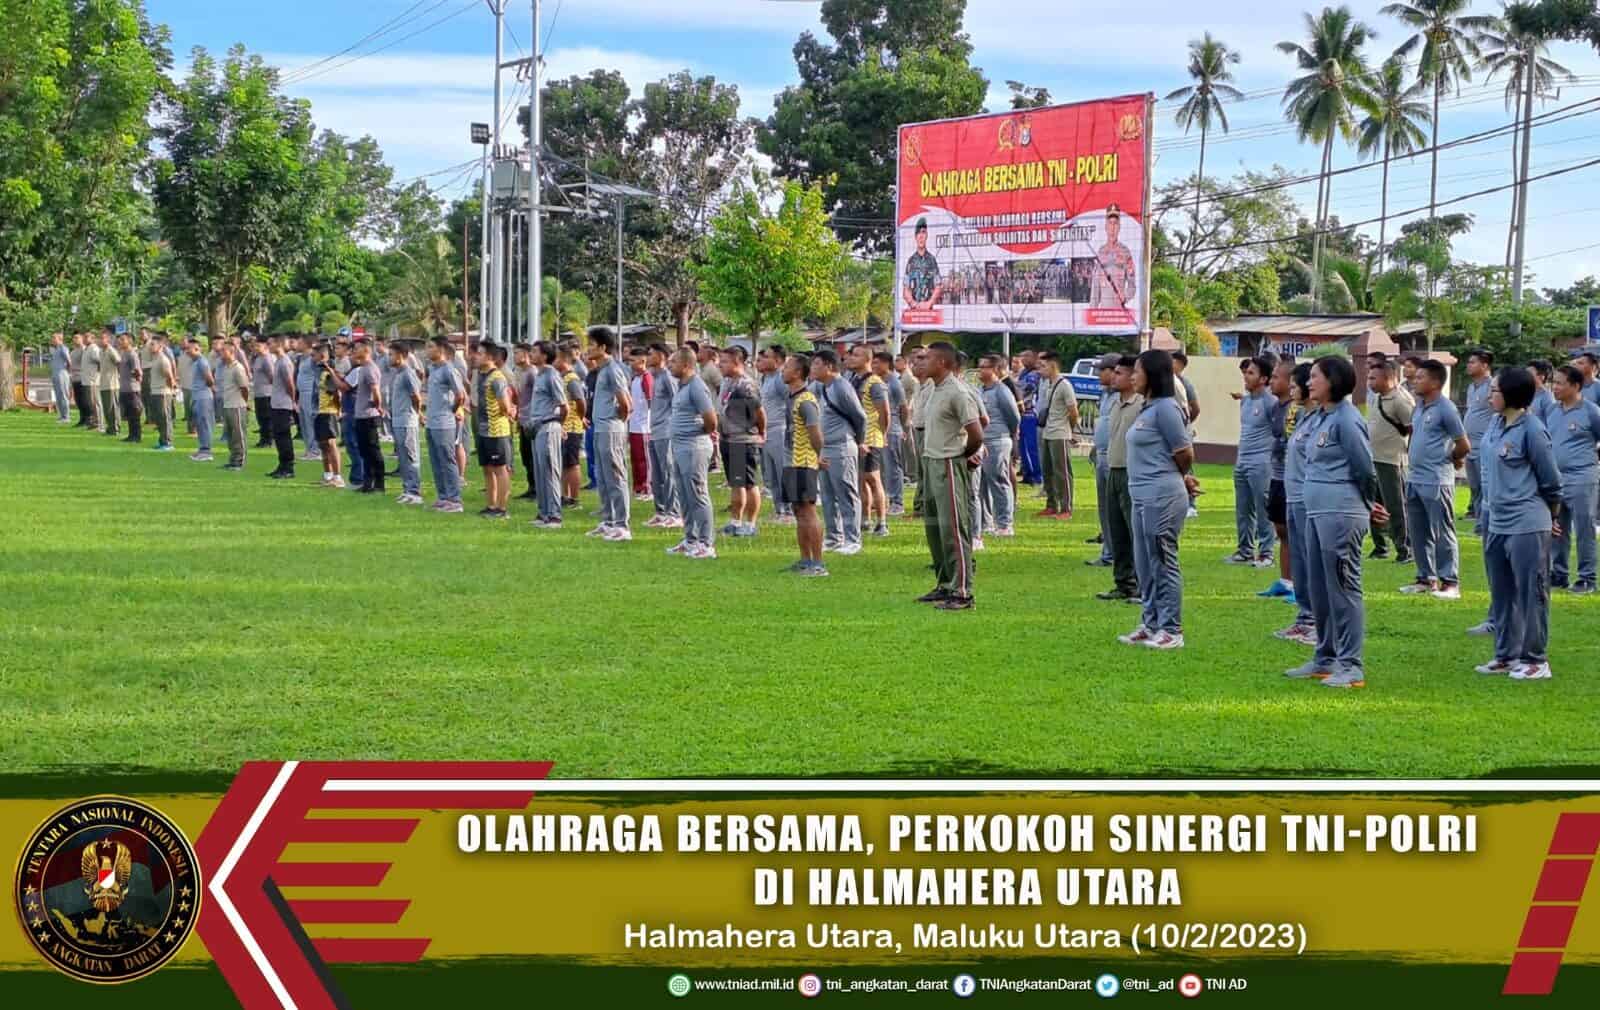 Olahraga Bersama, Perkokoh Sinergi TNI-Polri di Halmahera Utara